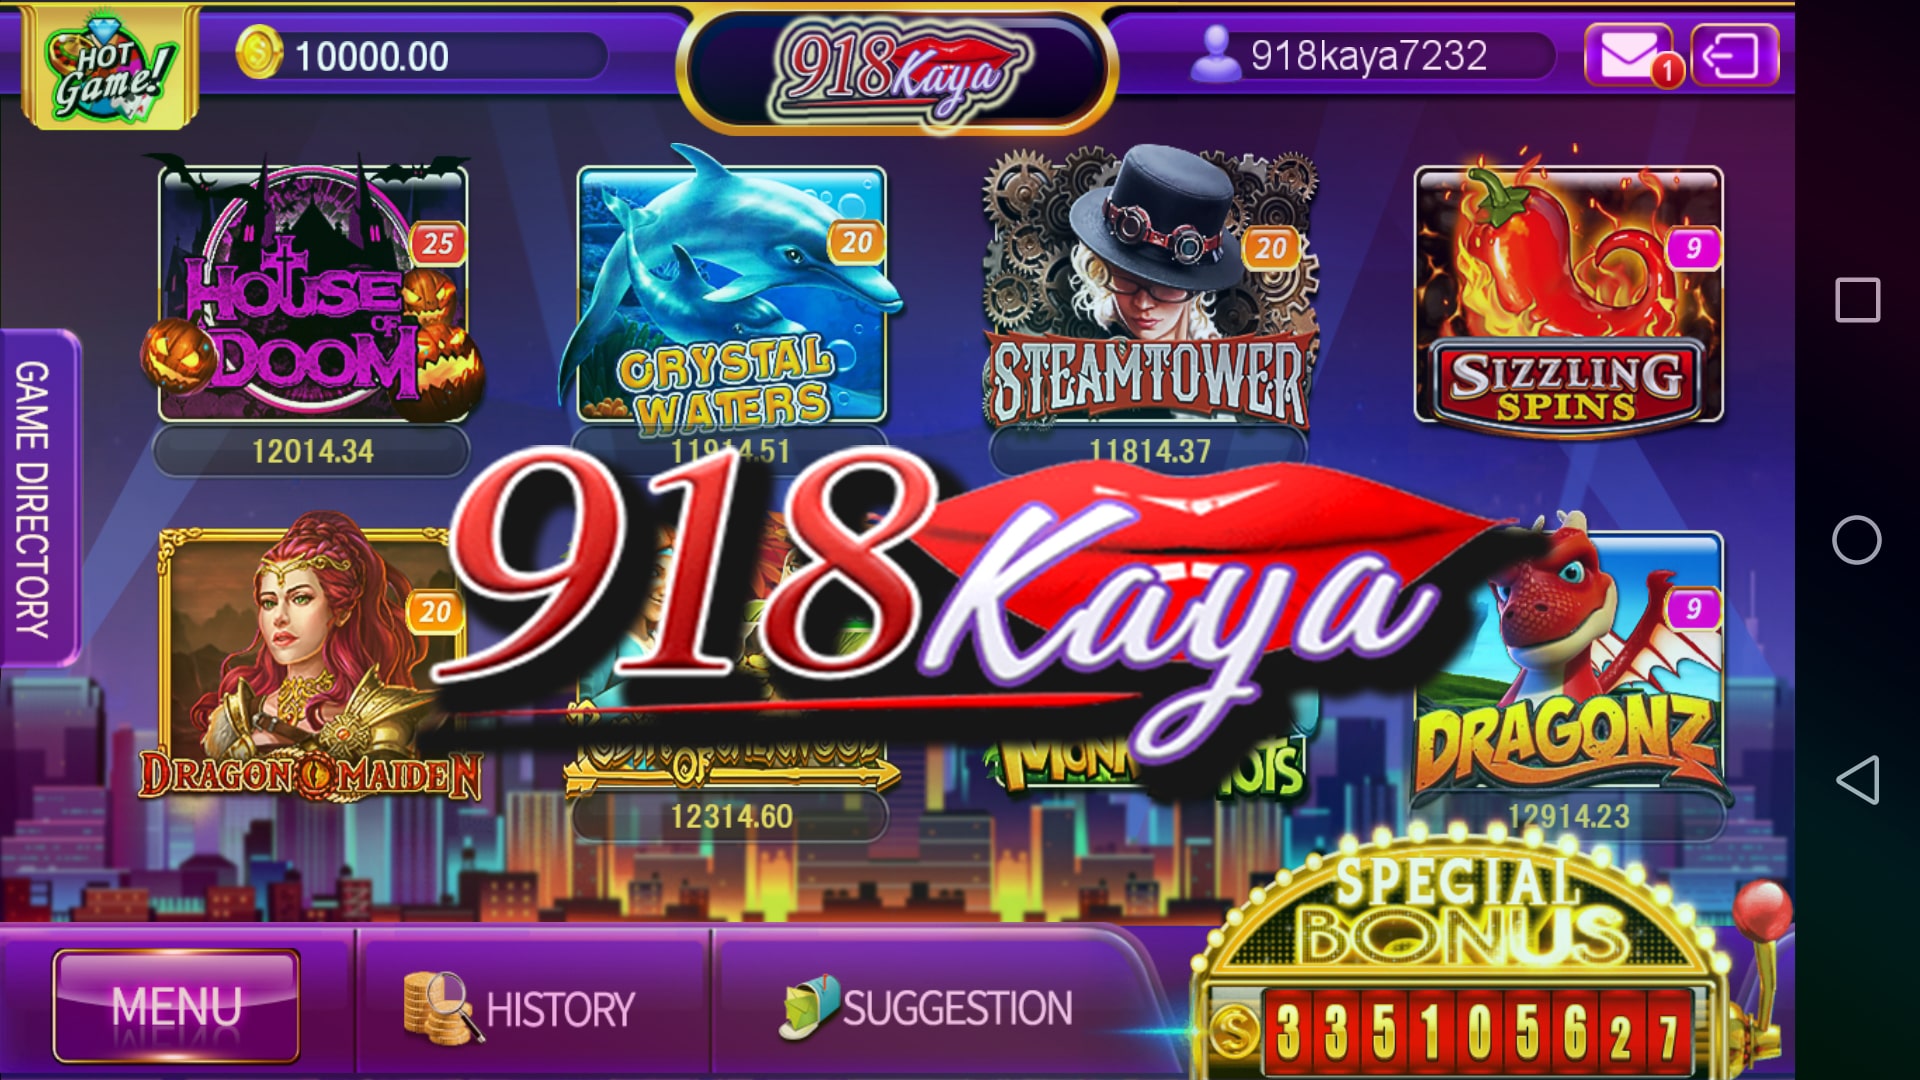 下载 918kaya Winbox Casino